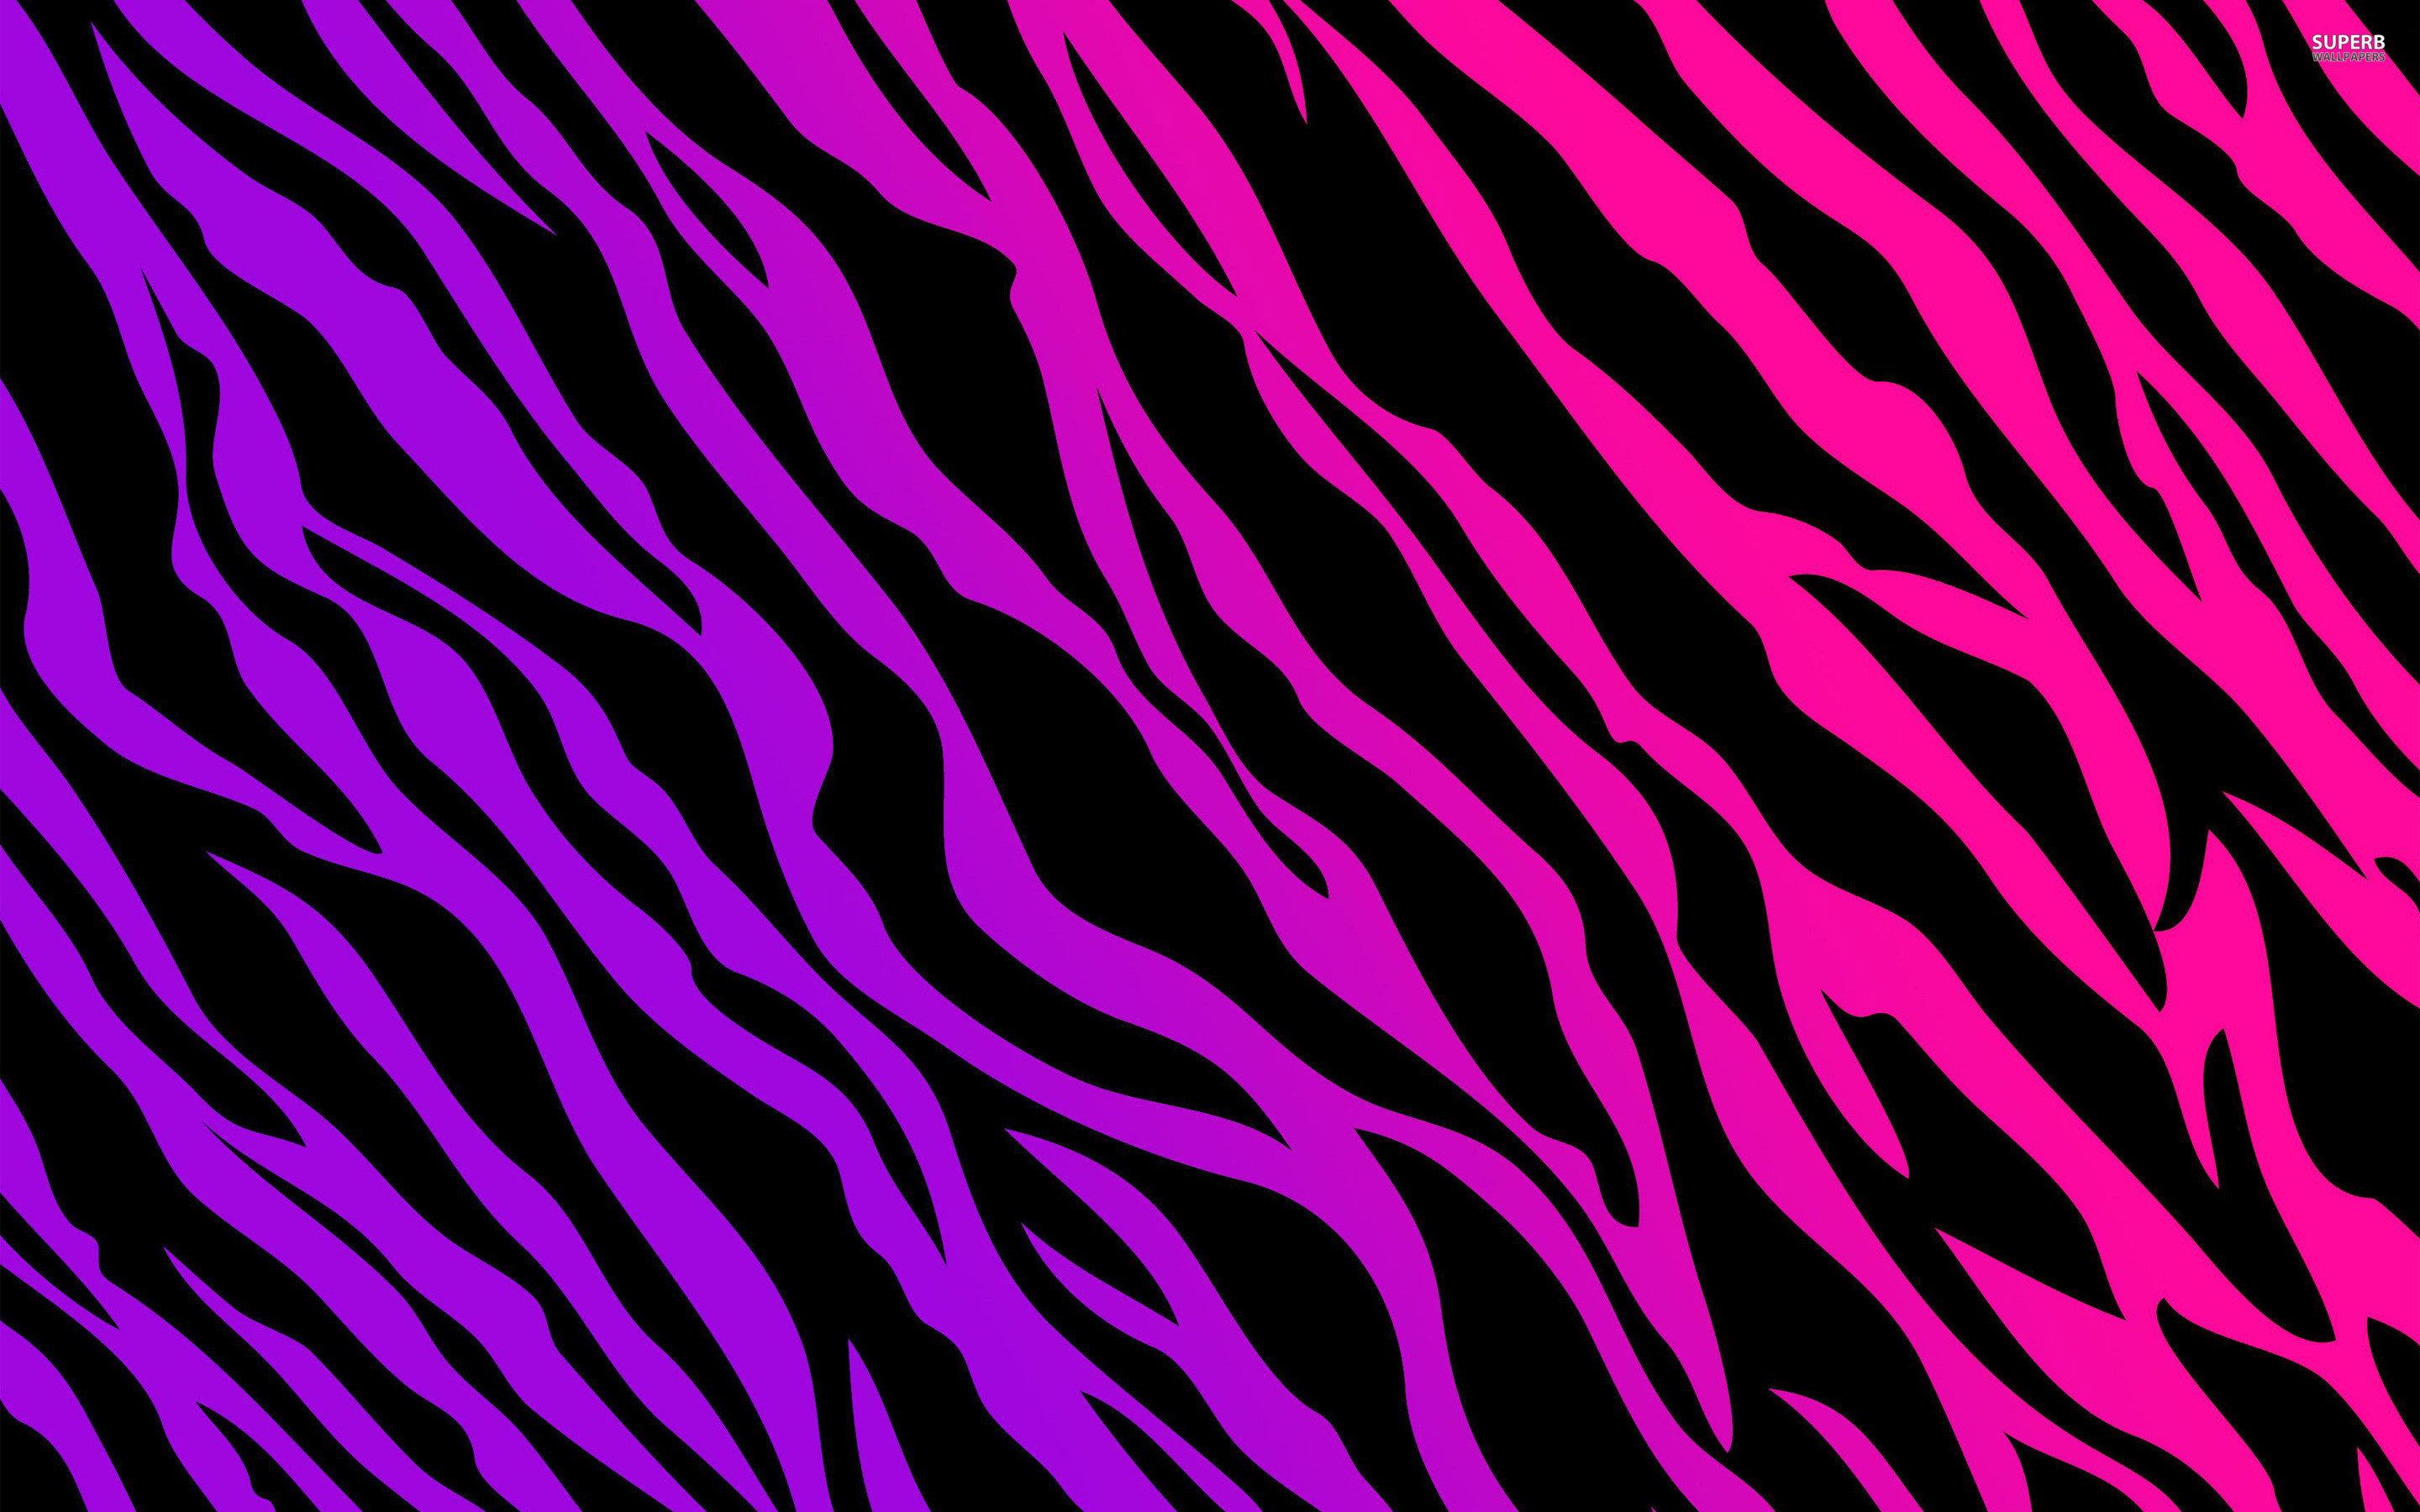 Full Pink Zebra Wallpaper Image